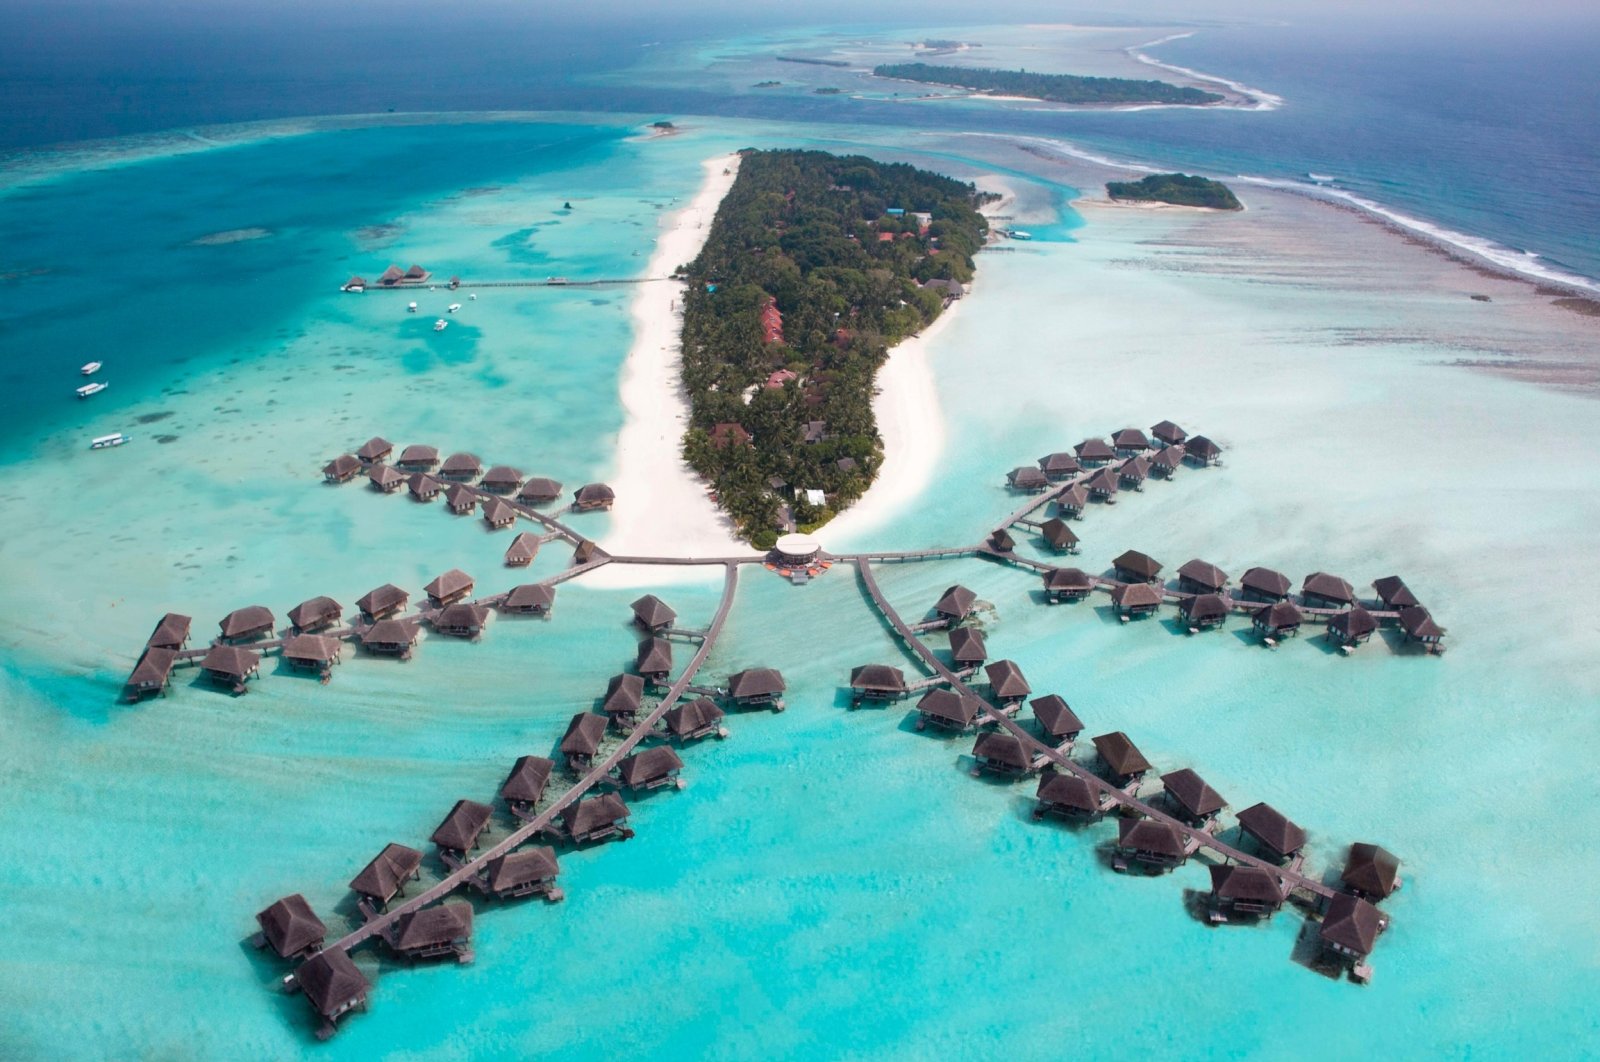 An aerial view of a Maldives resort. (Photo by Funda Karayel)